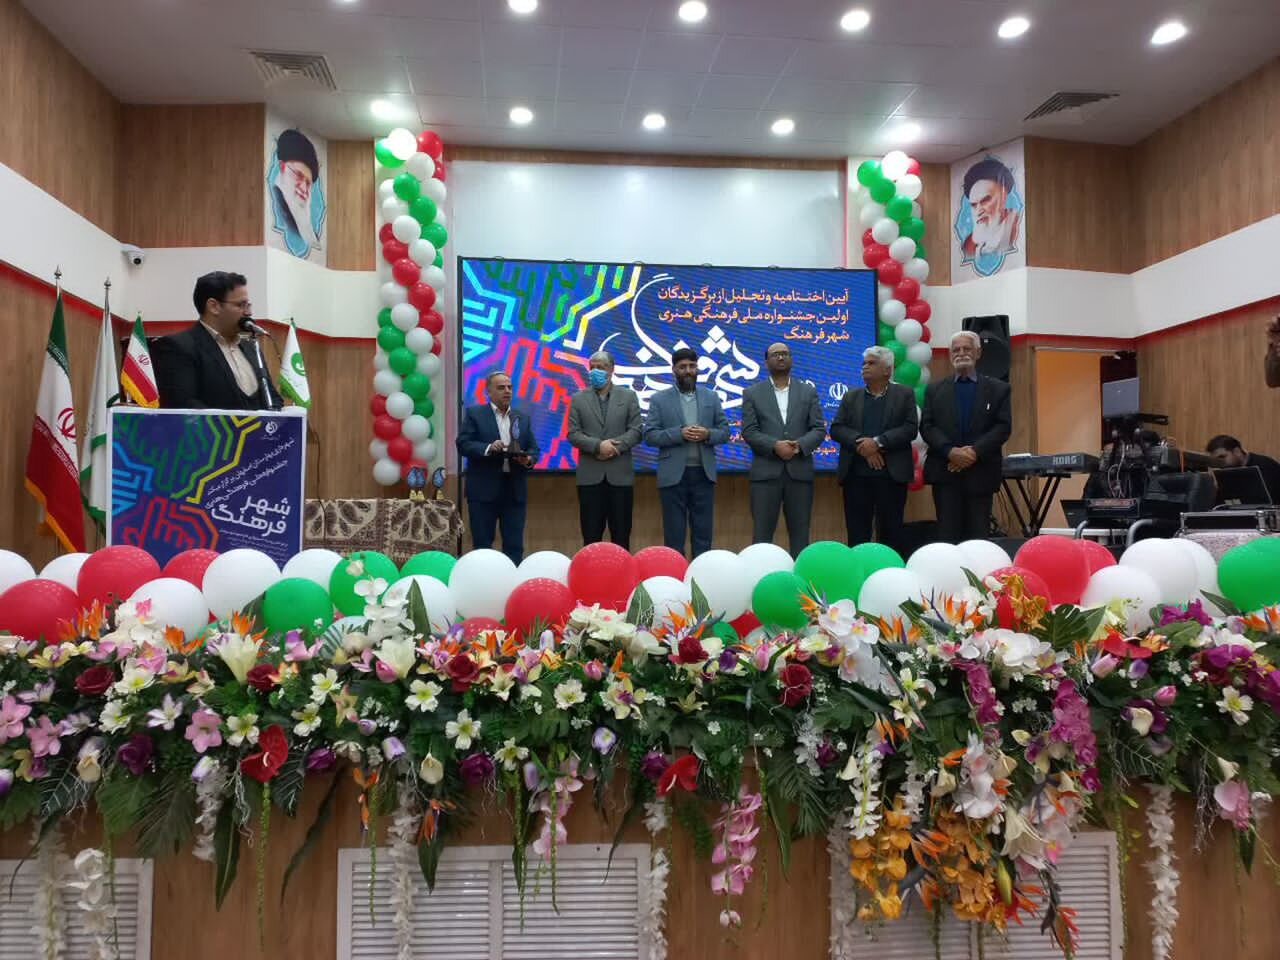 شهرداری نجف‌آباد برگزیده جشنواره ملی فرهنگی هنری "شهر فرهنگ" کشور شد